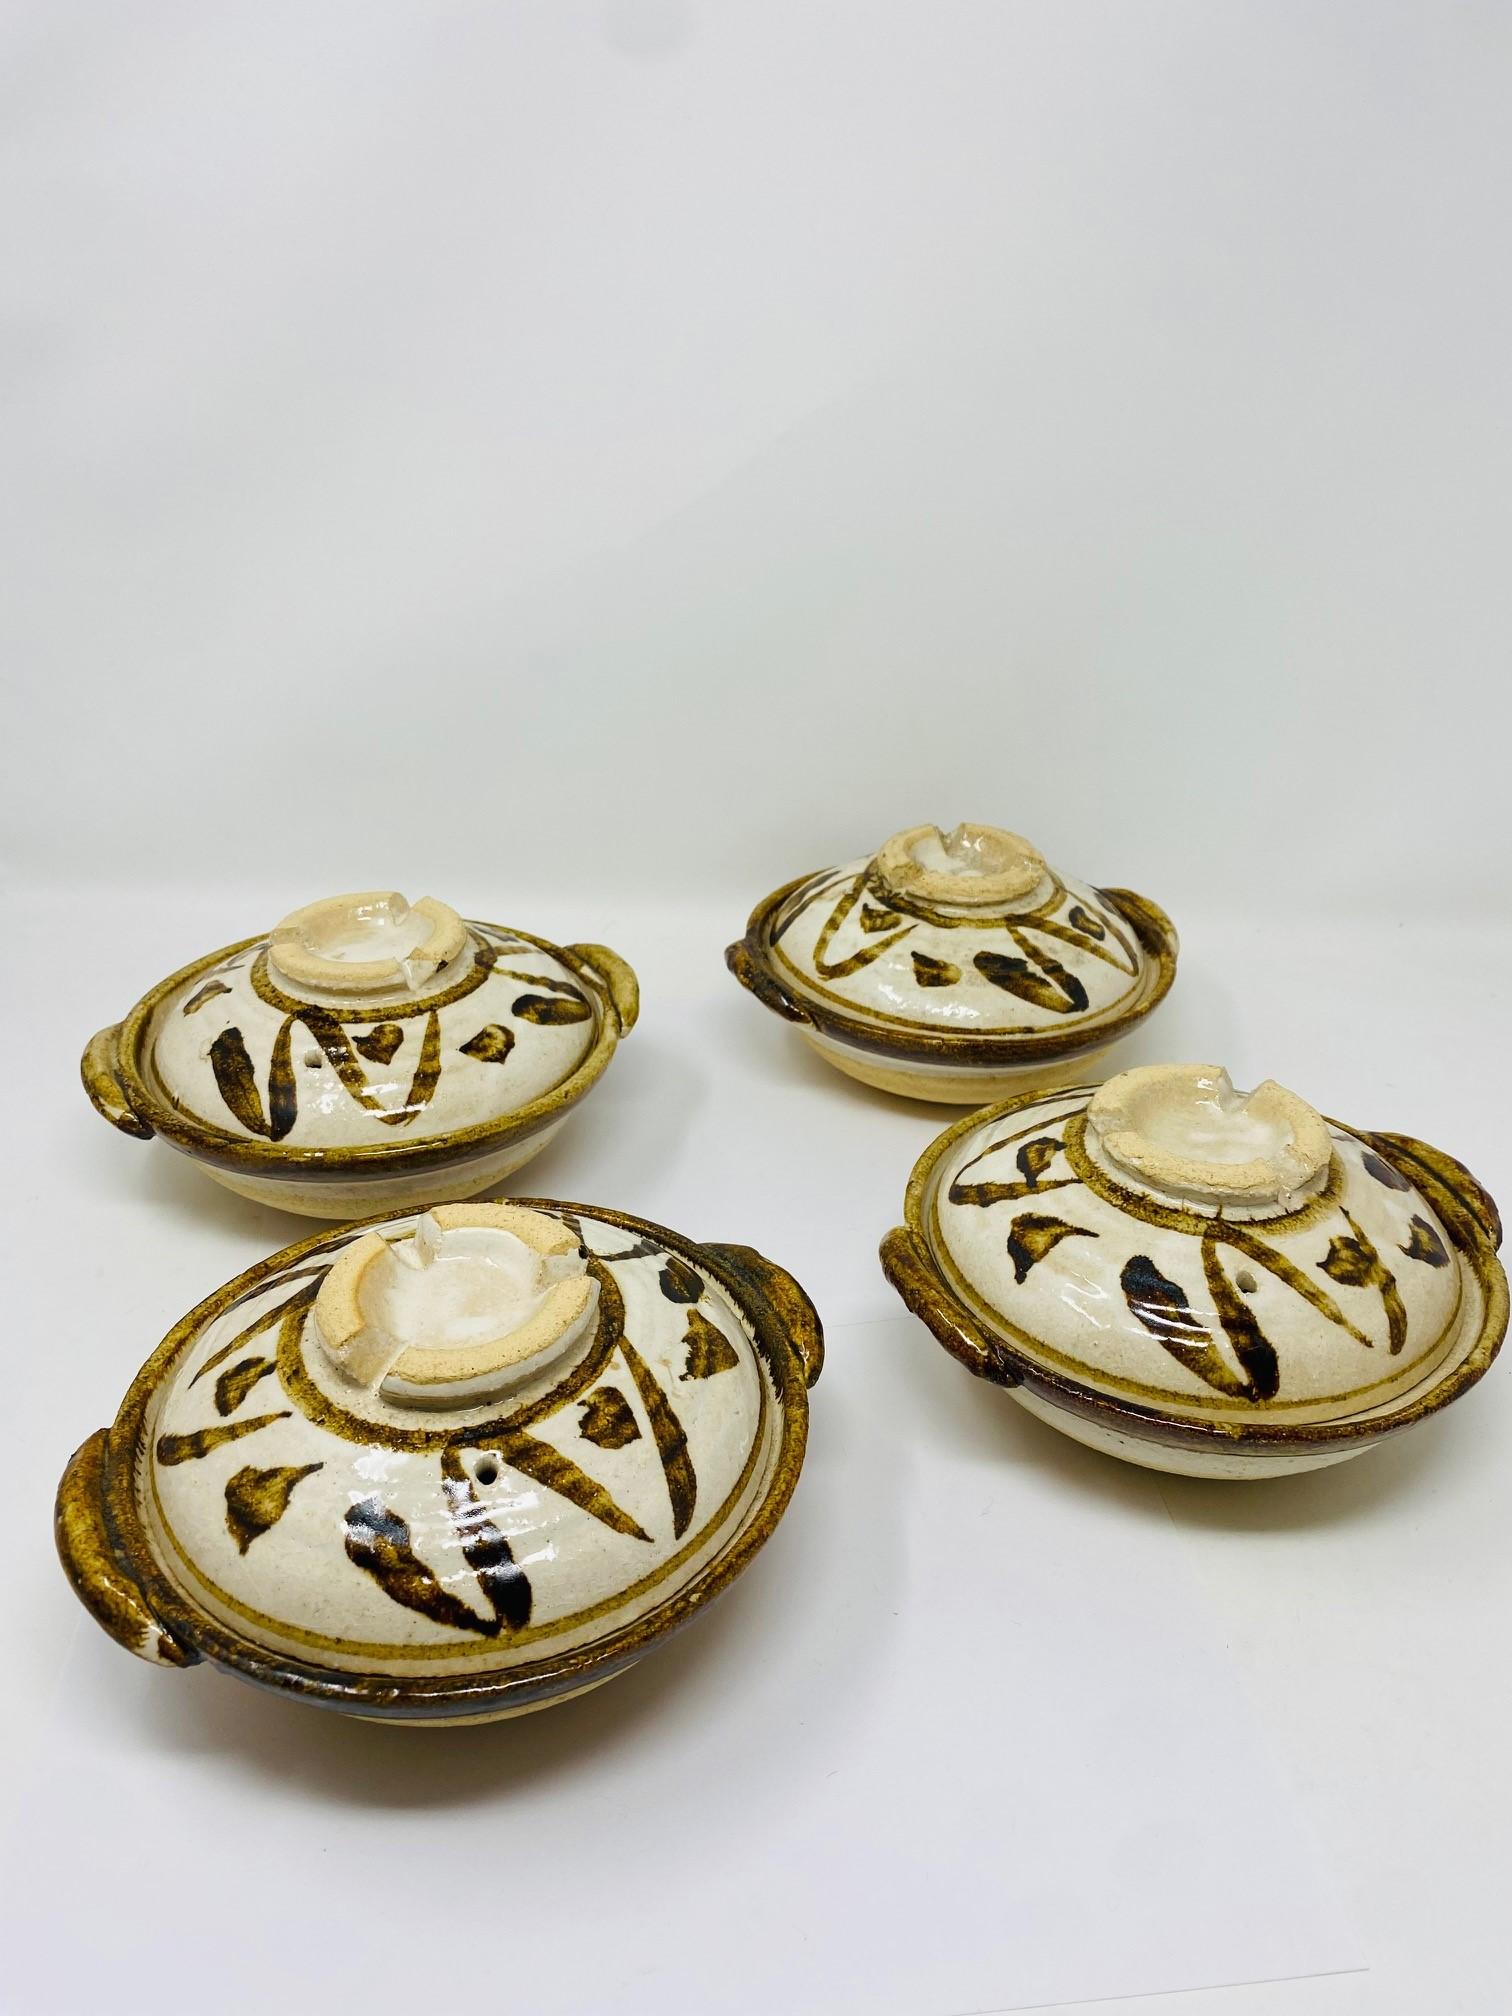 Schönes Set aus 2 überdachten Schalen von Studio Pottery im Vintage-Stil.  Diese handgefertigten Schalen sind mit belüfteten Deckeln und Schultergriffen ausgestattet. Ein handgemaltes abstraktes Design akzentuiert die natürlich beige glasierte